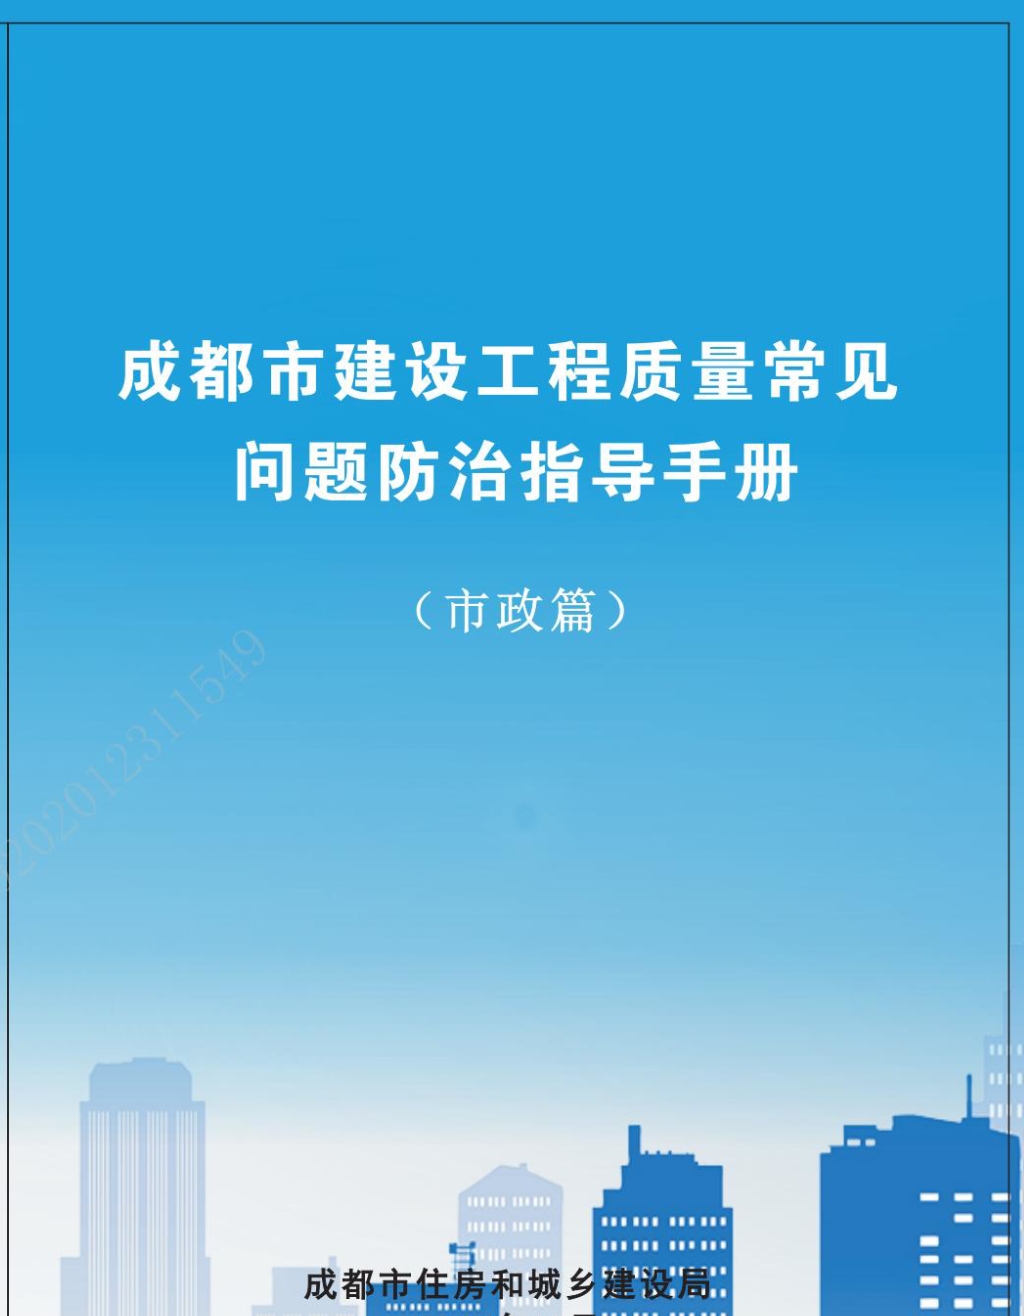 成都市建設工程質量常見問題防治指導手冊（市政篇）_00.jpg